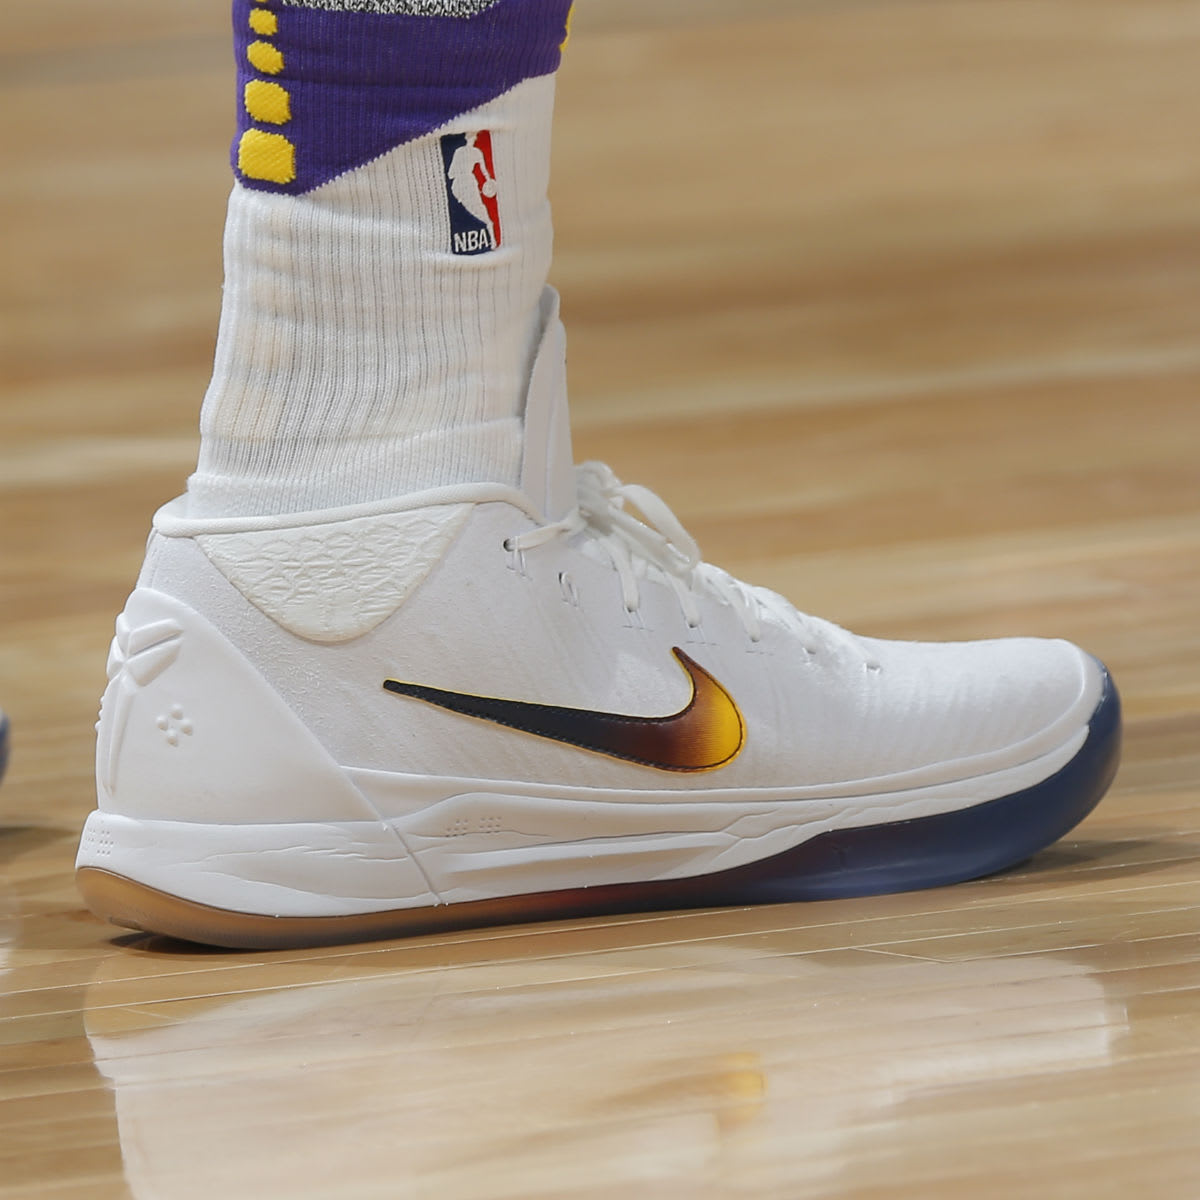 Isaiah Thomas Nike Kobe A.D. Mid Lakers PE